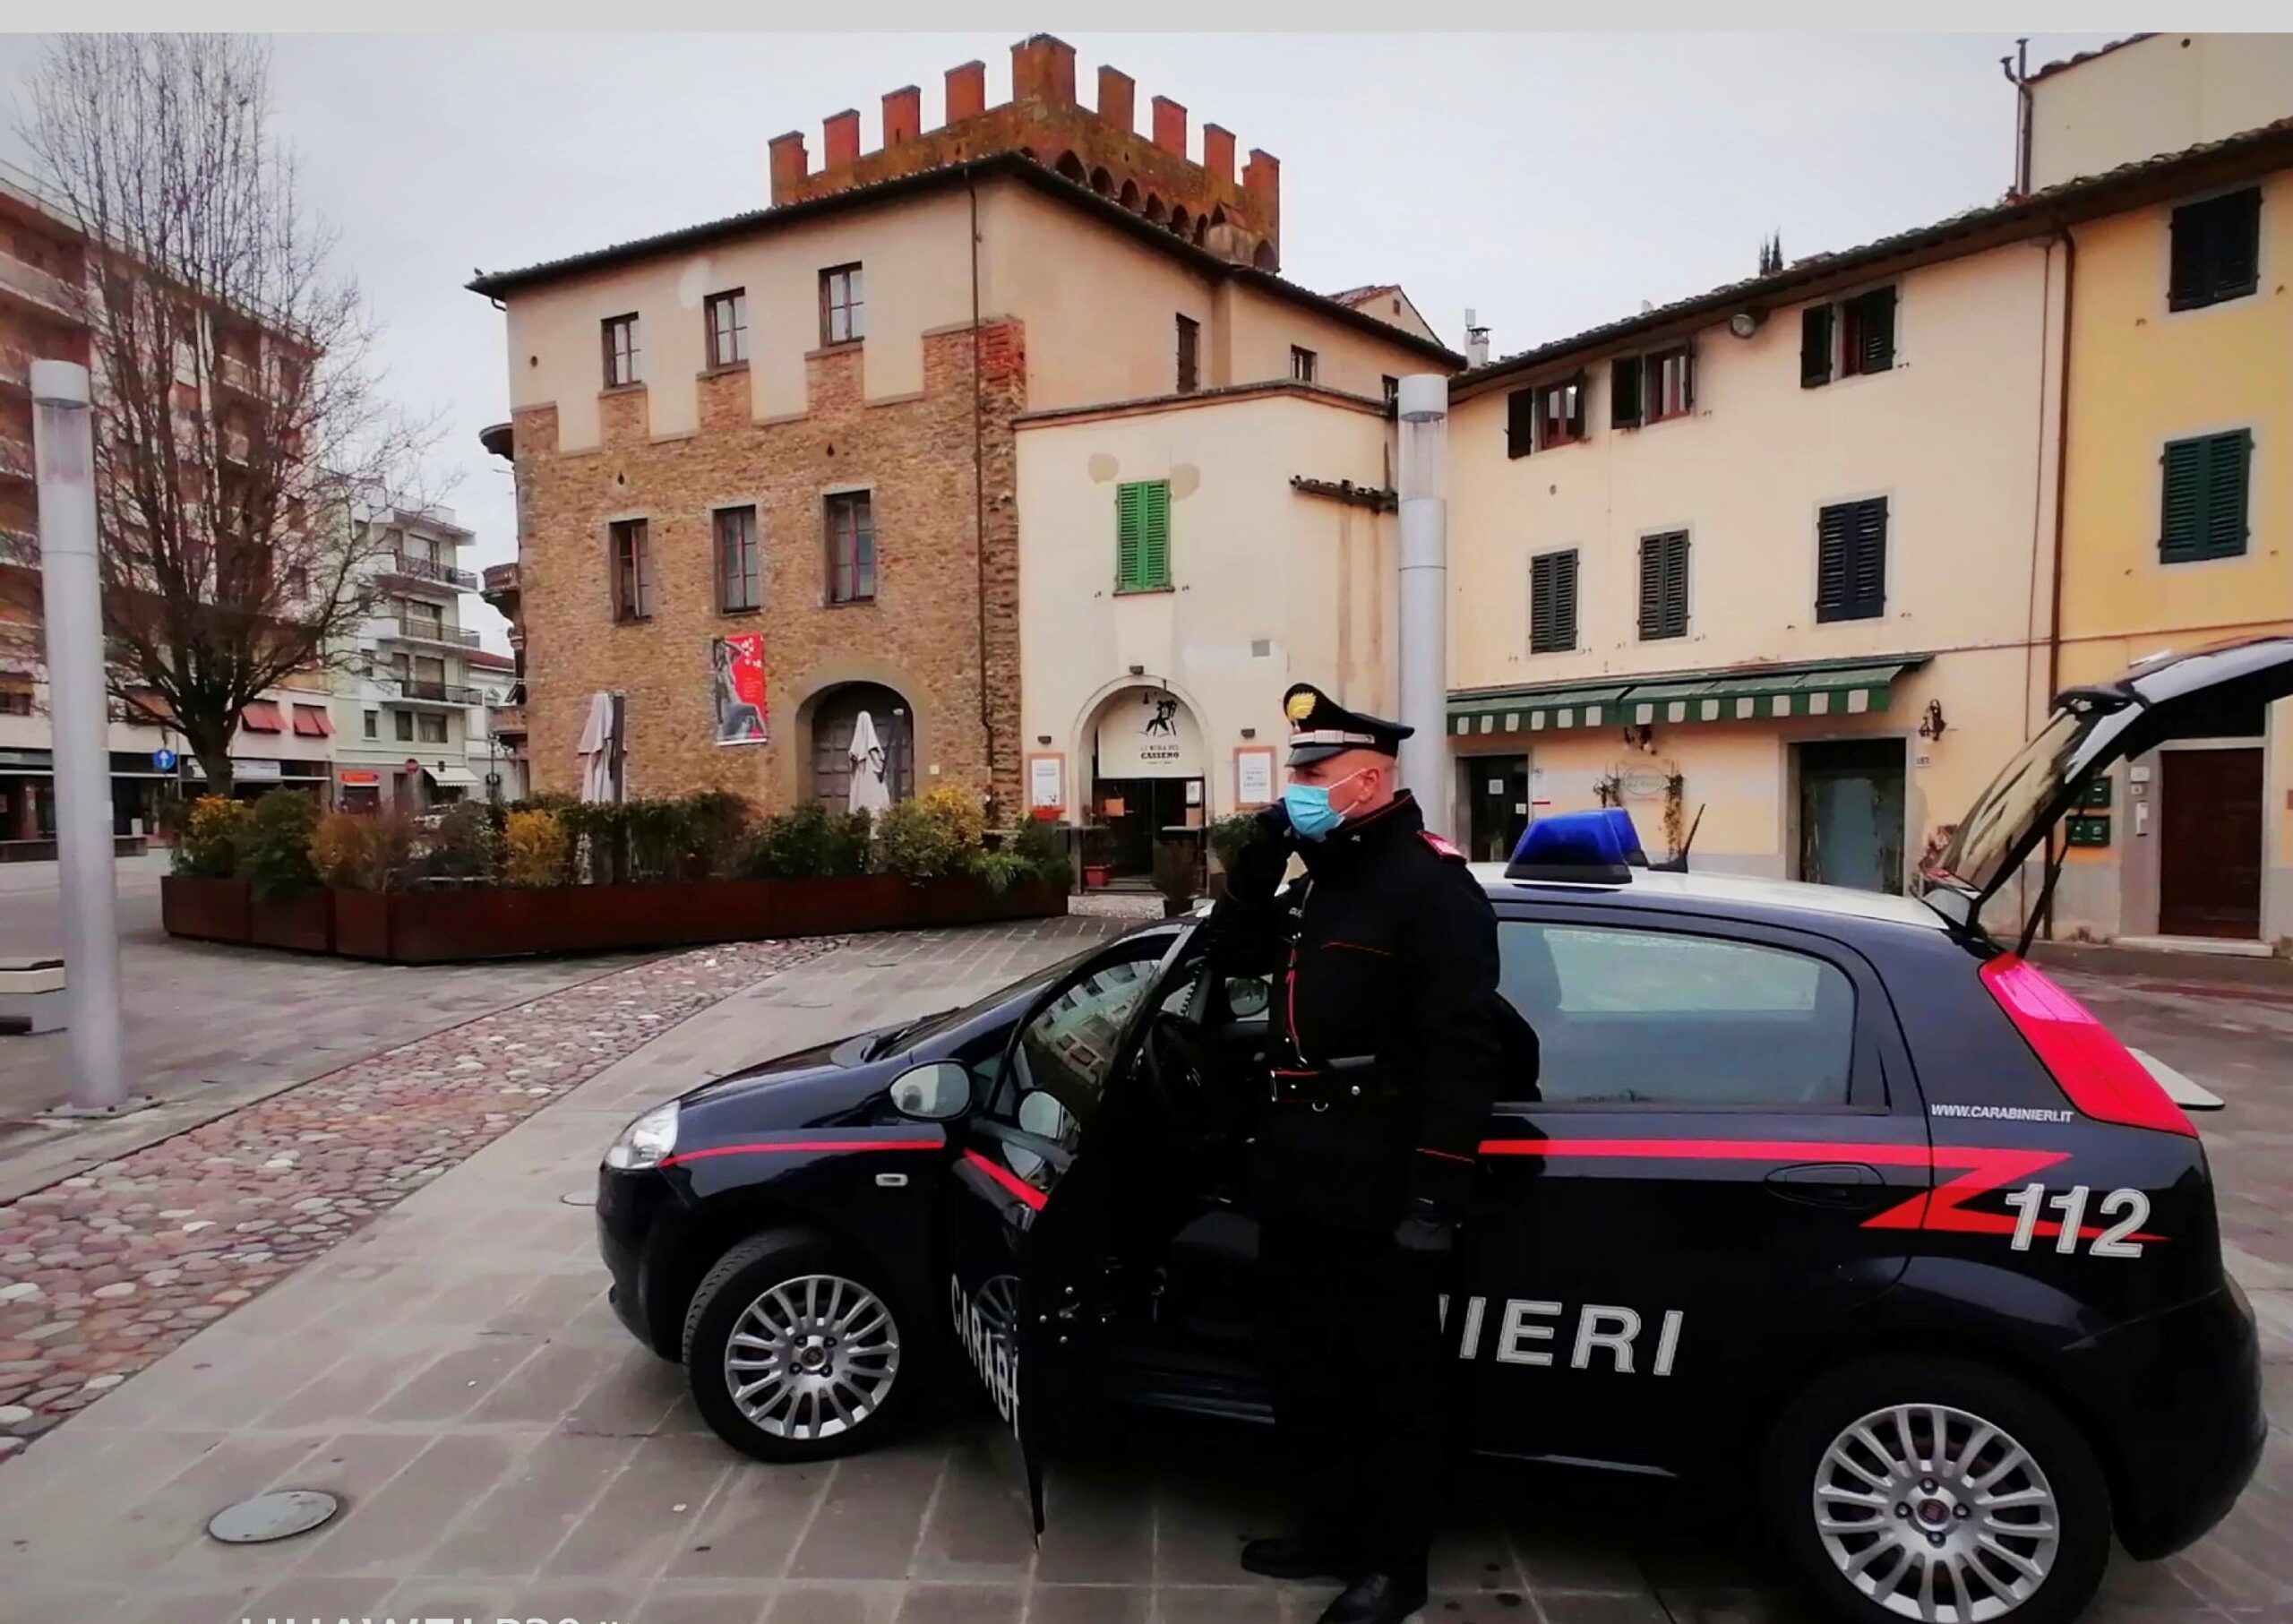 I Carabinieri rafforzano i controlli: arrestato pregiudicato per evasione dai domiciliari